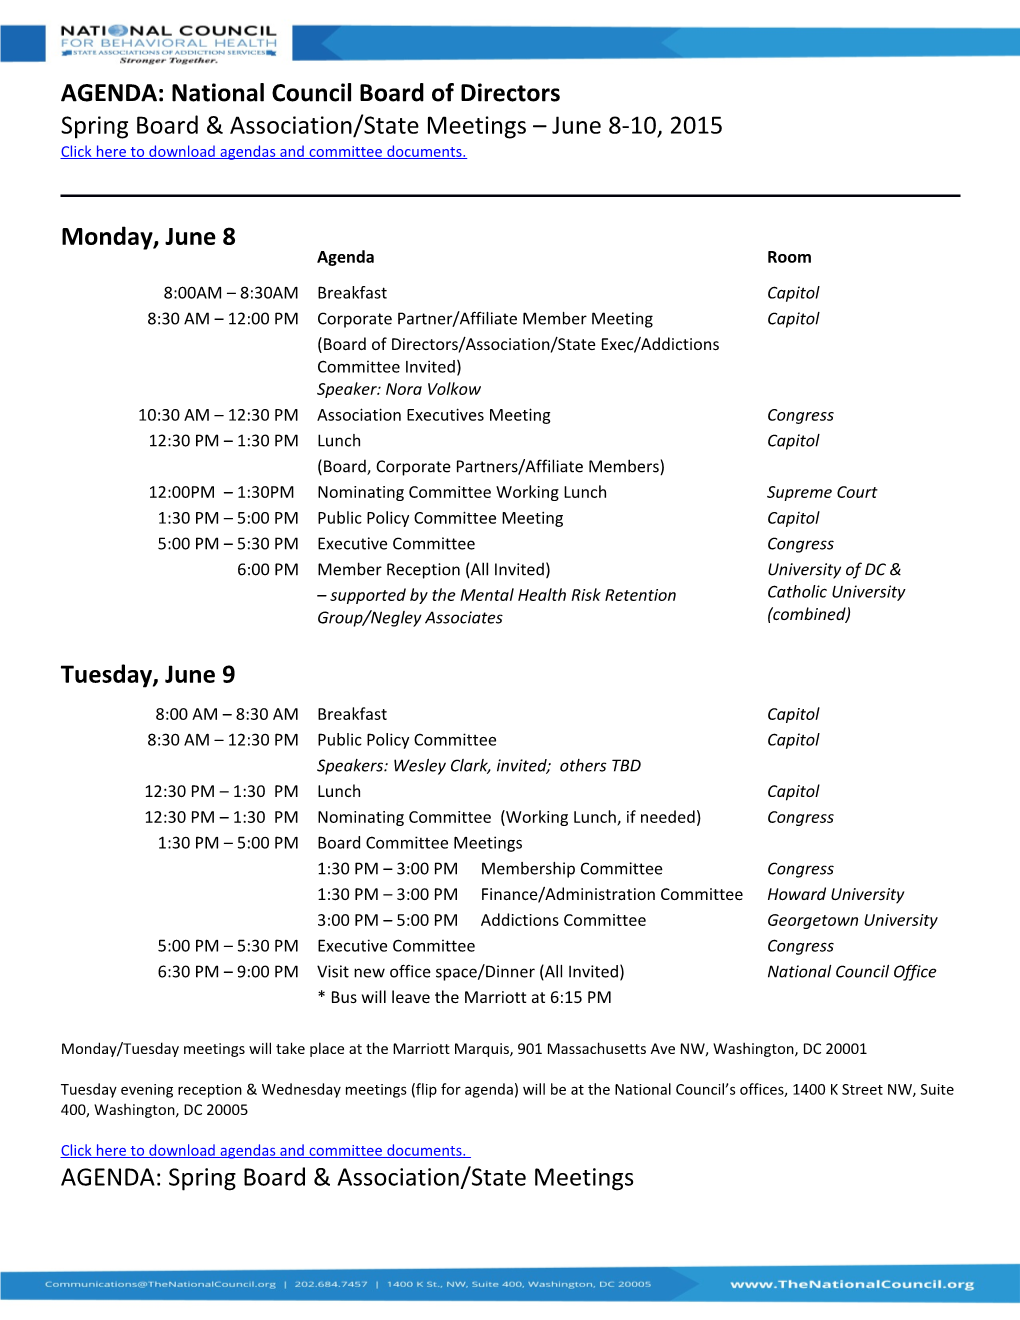 Spring Board & Association/State Meetings June 8-10, 2015